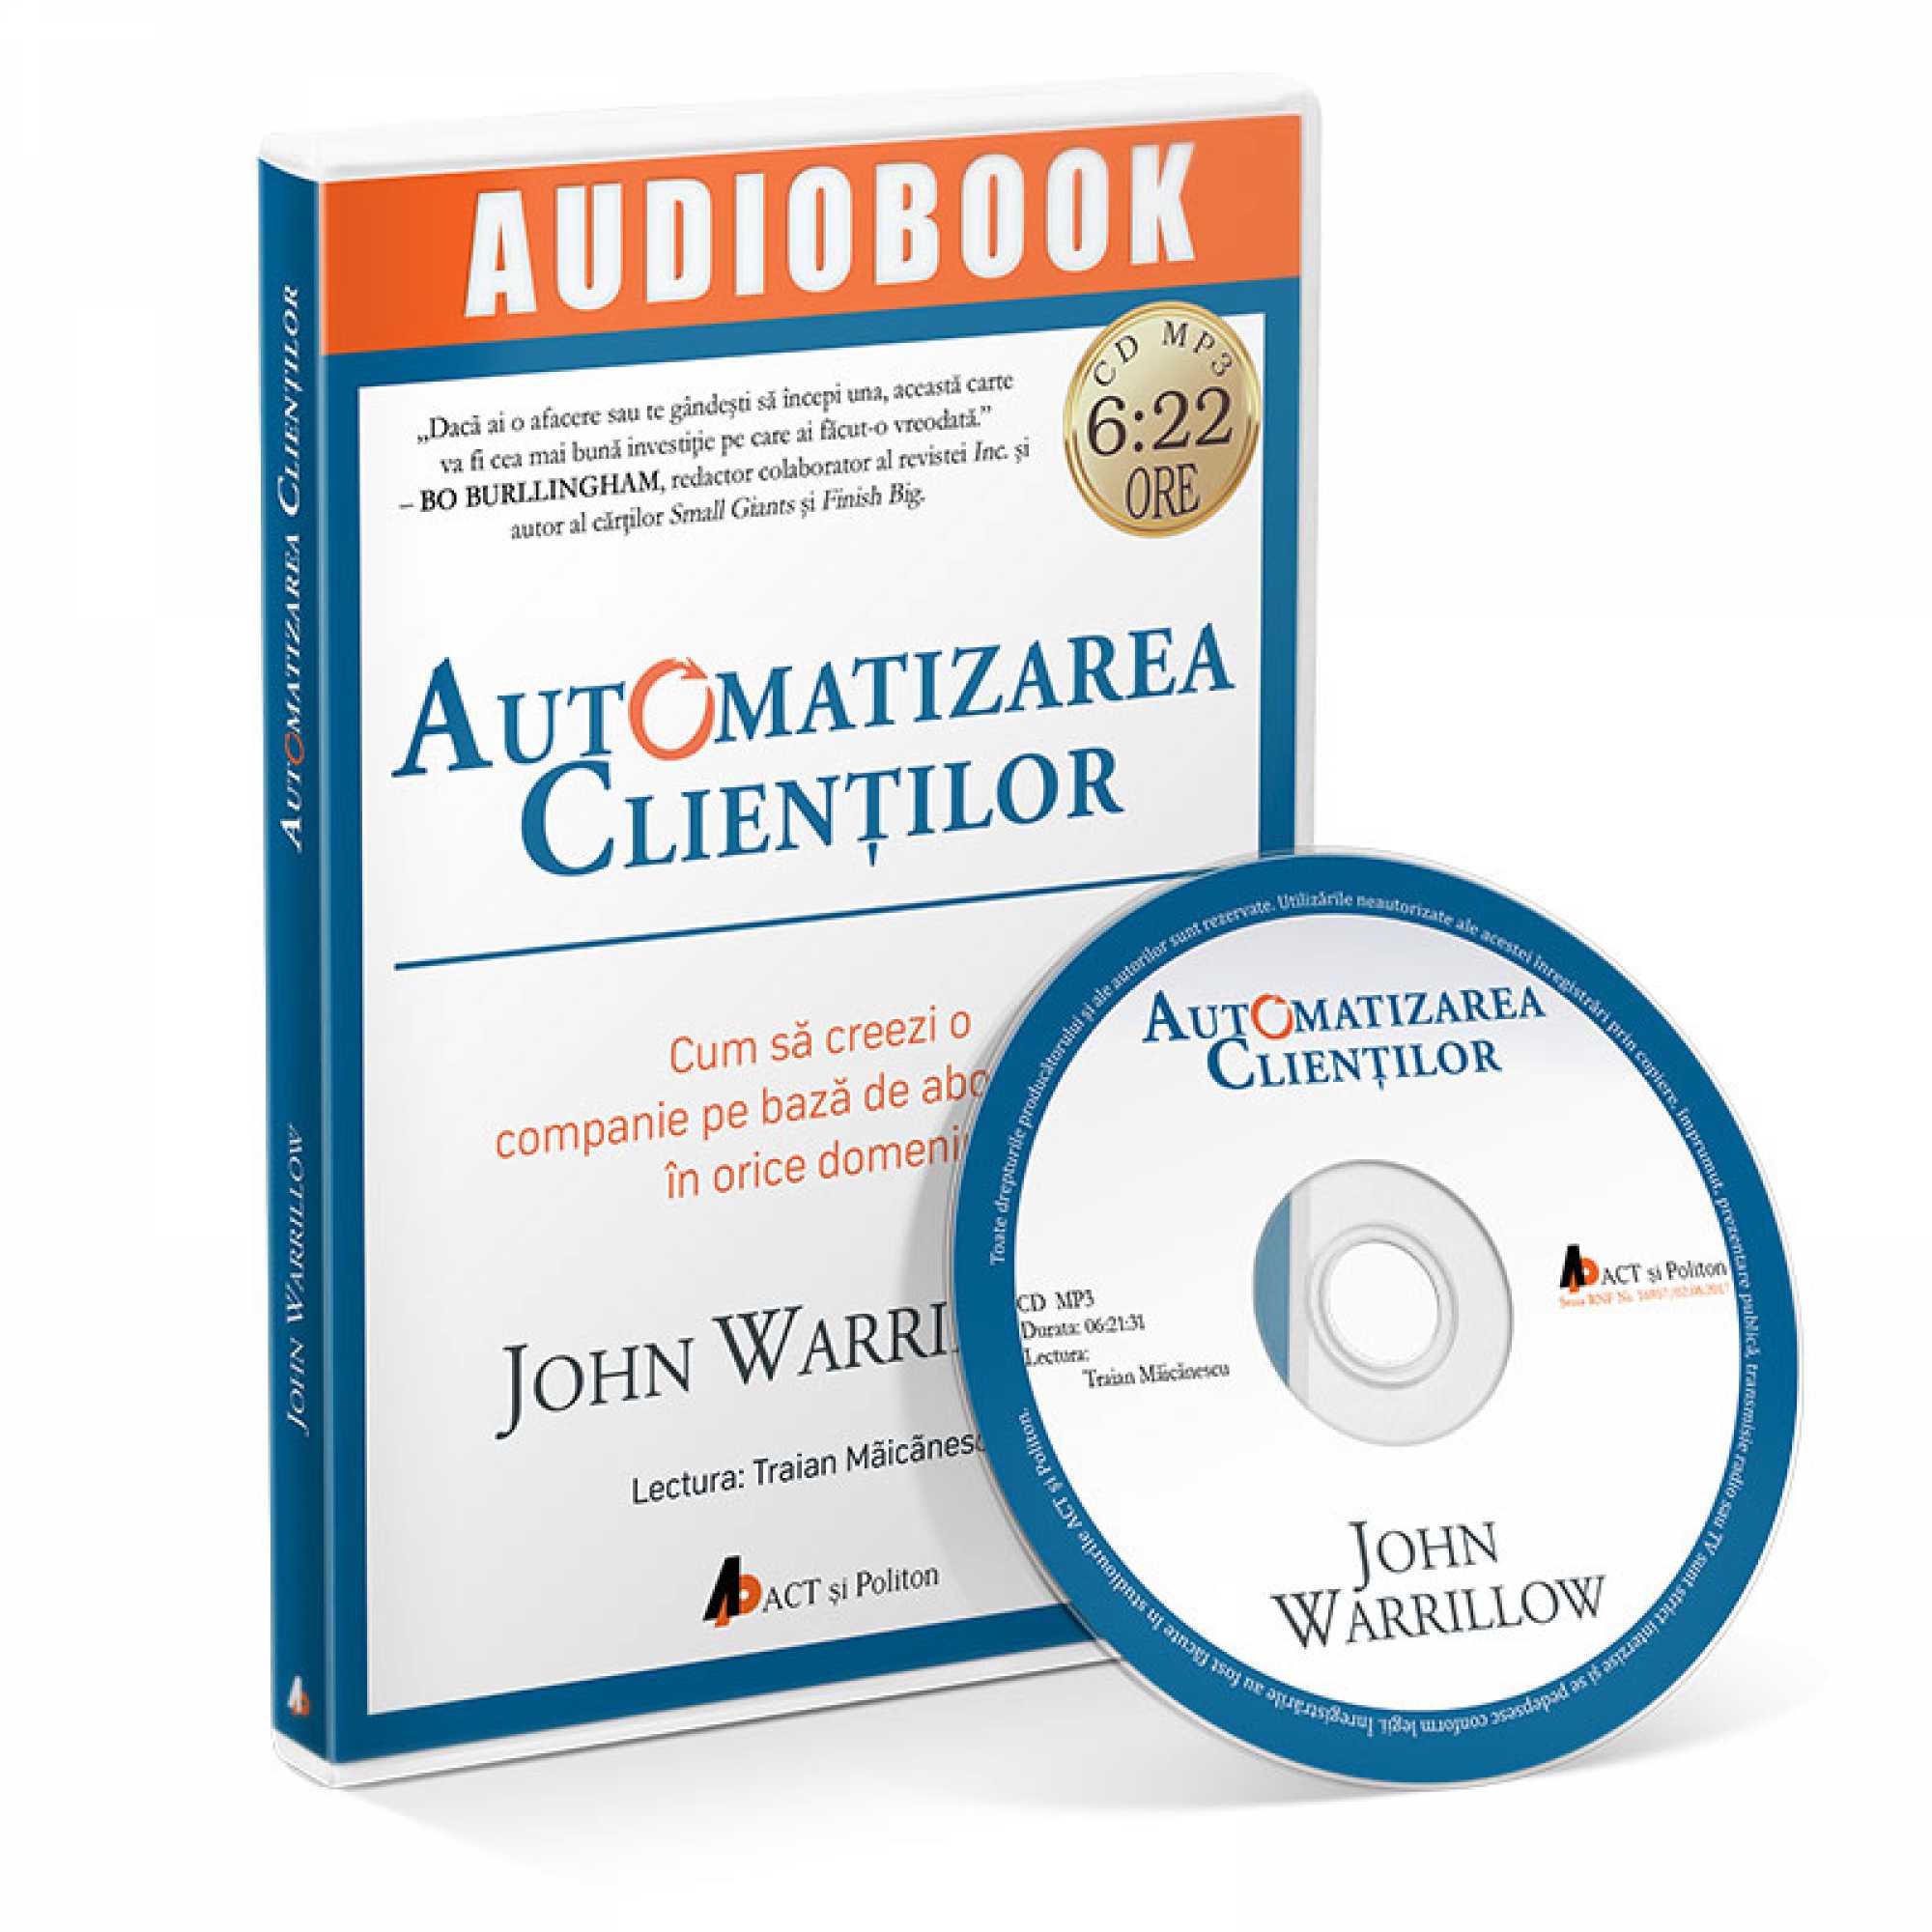 Automatizarea clientilor – Audiobook | John Warrillow carturesti.ro poza noua